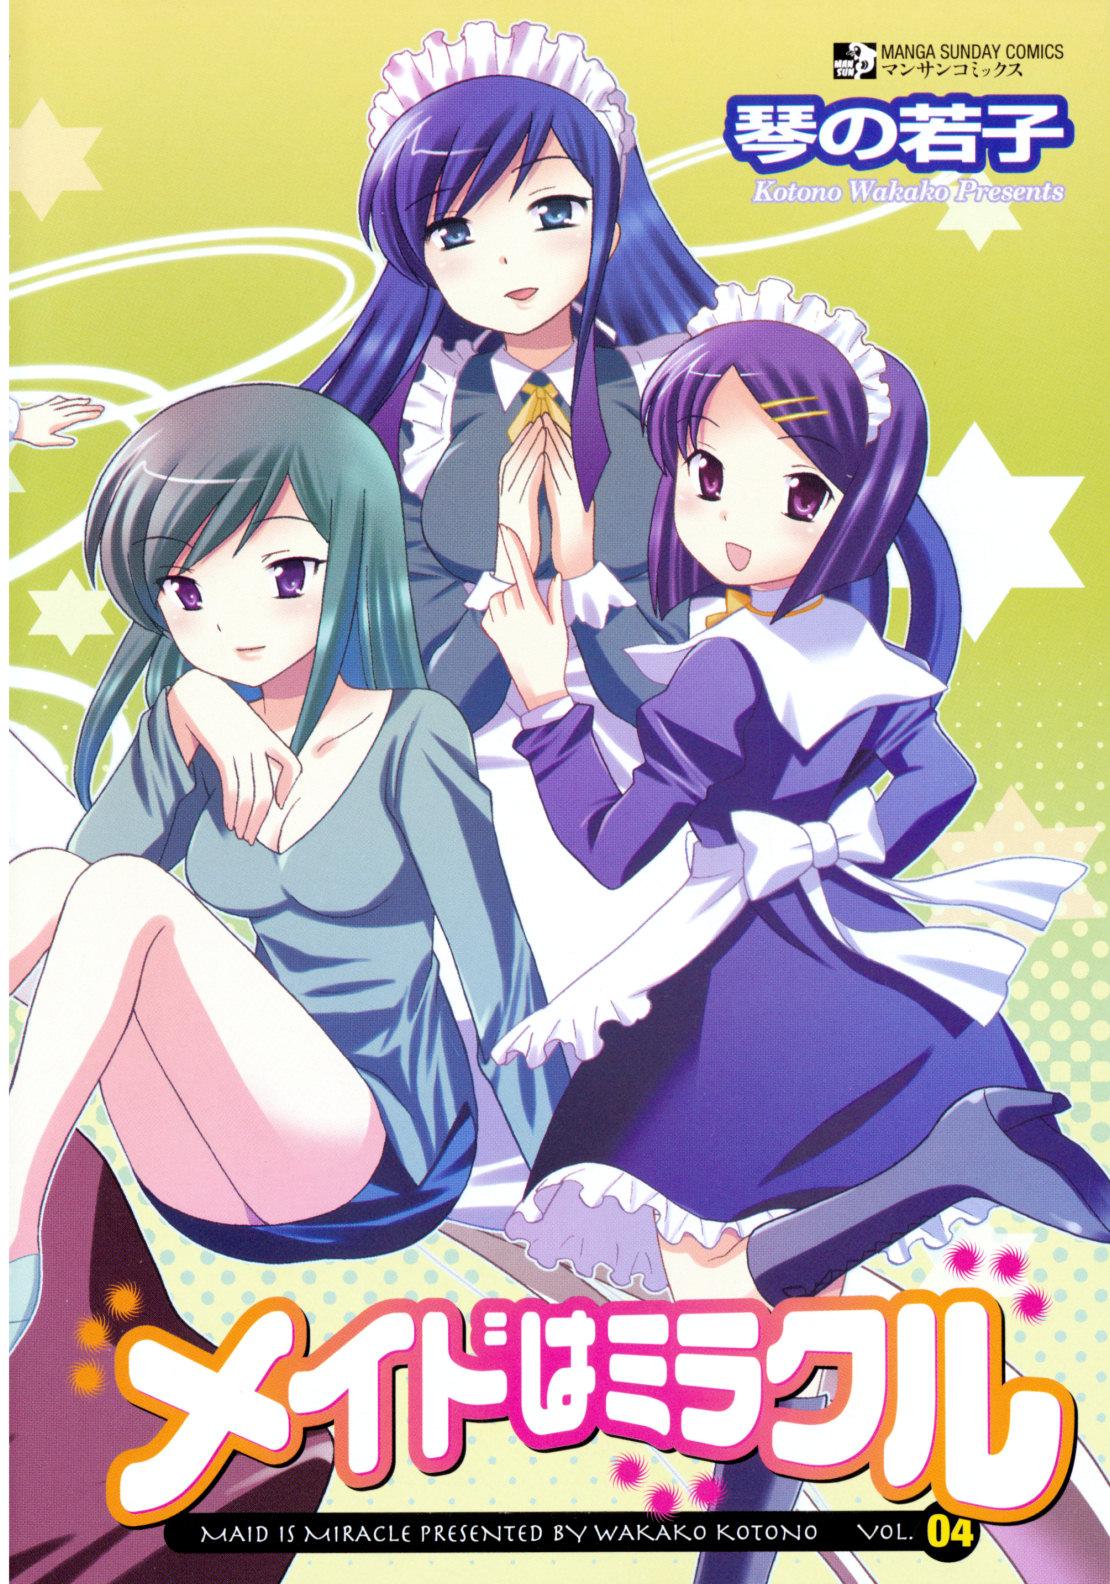 Maid wa Miracle Vol. 04 4